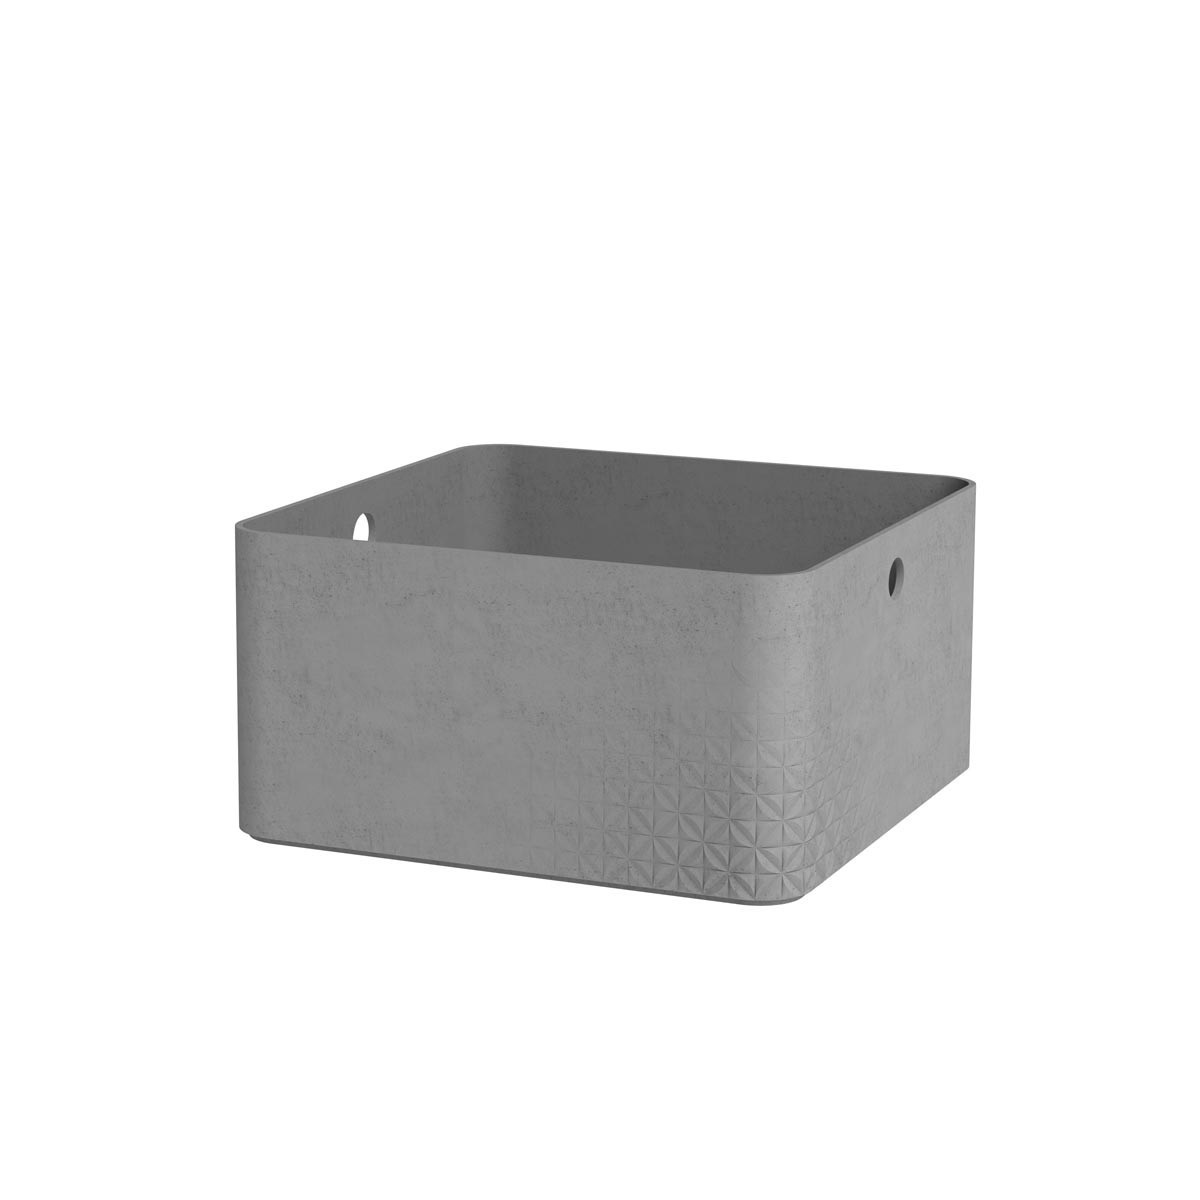 Контейнер для хранения Beton L 8,5л с крышкой квадратный светло-серый CURVER 243401 в интернет-магазине meandhome.ru